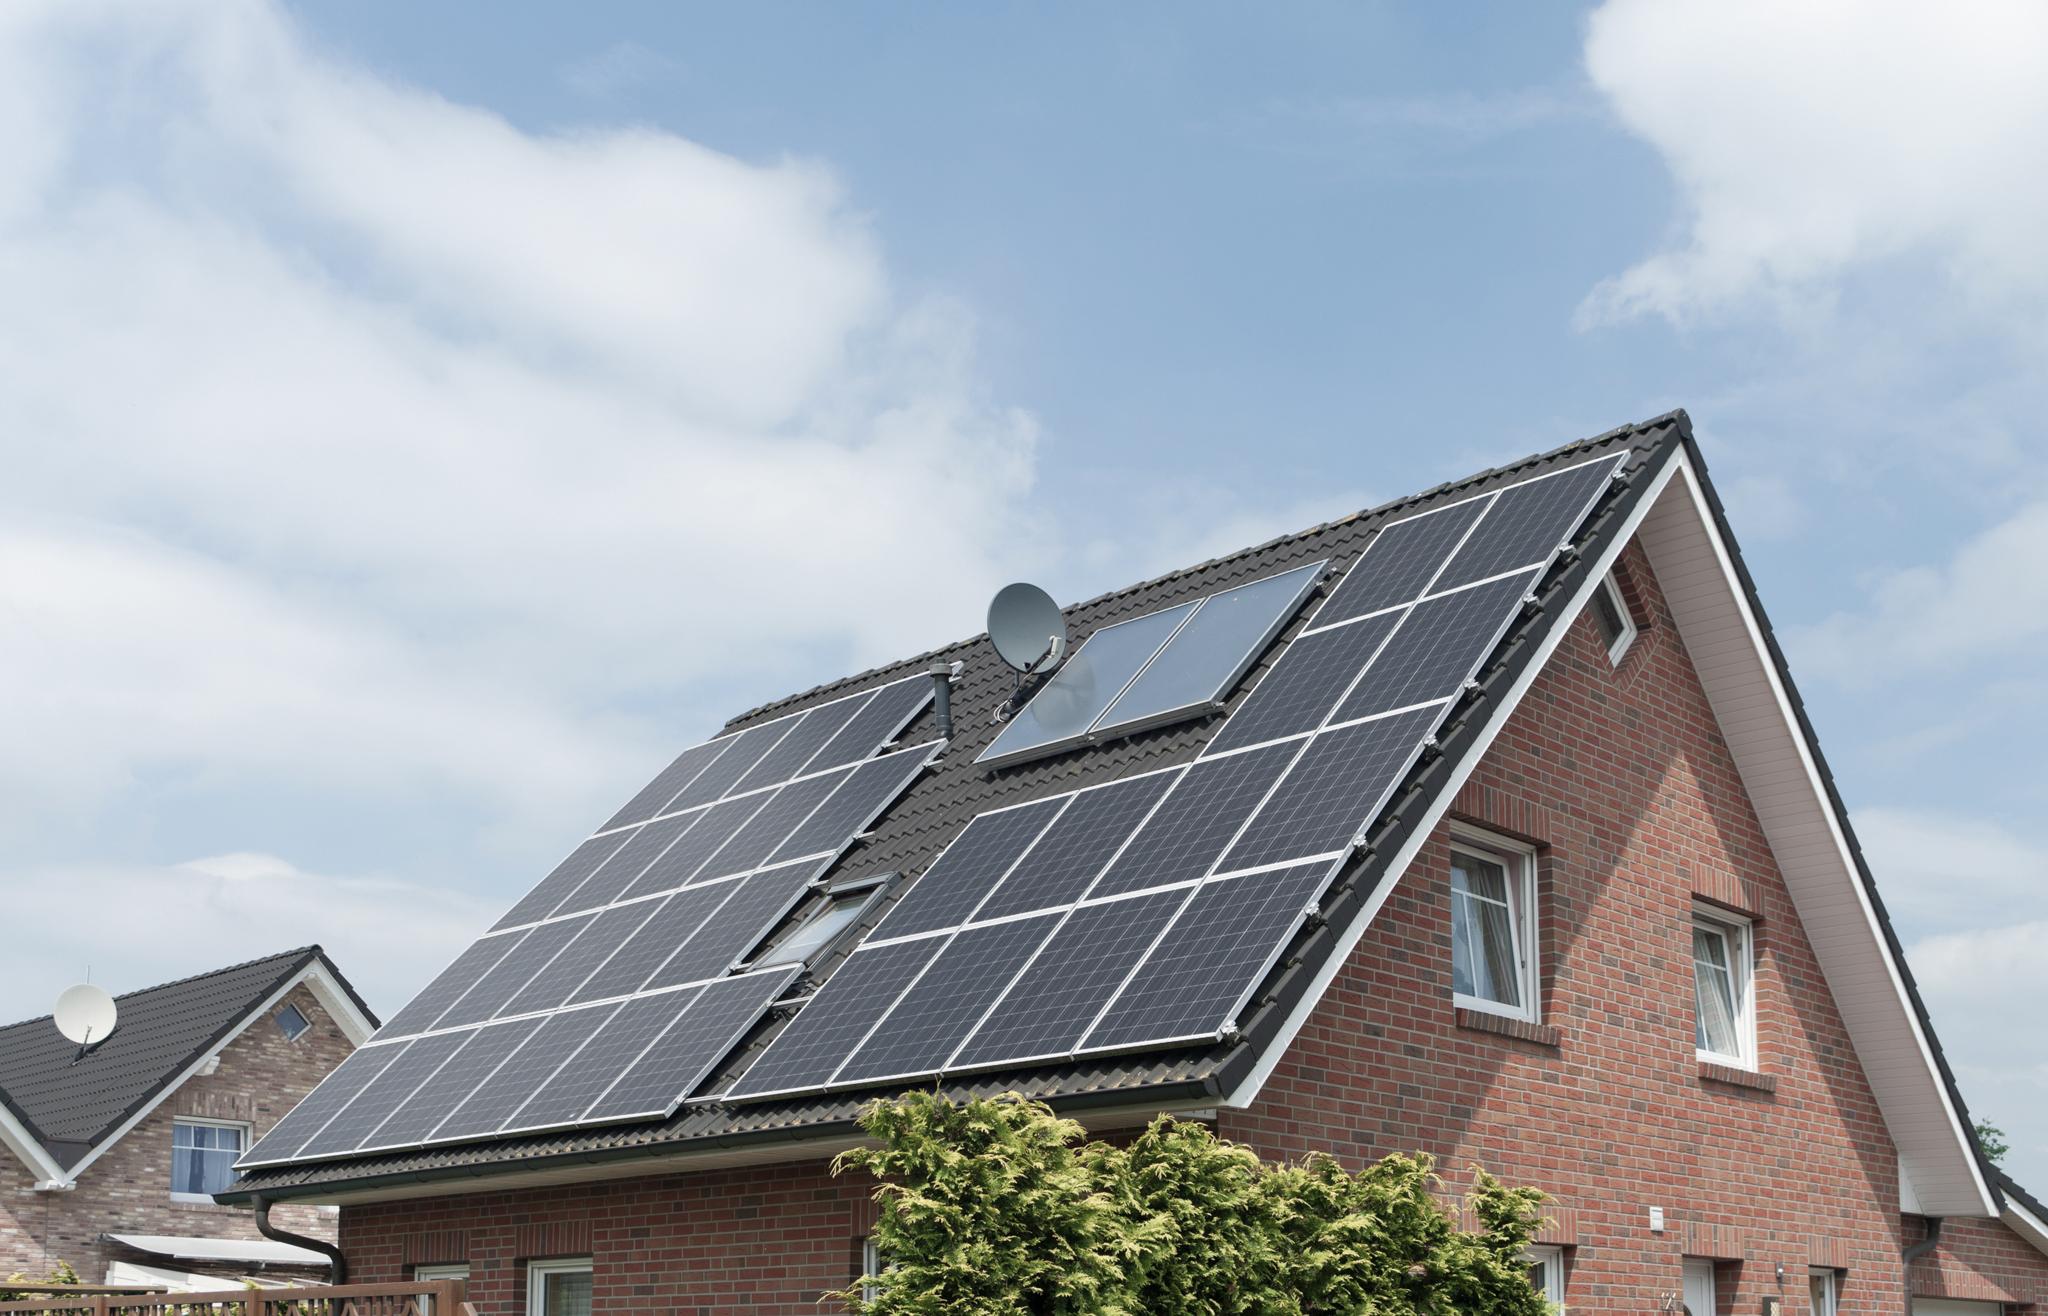 Einfamilienhaus mit Solaranlage auf dem Dach - Vor- und Nachteile der Schwarmbatterie